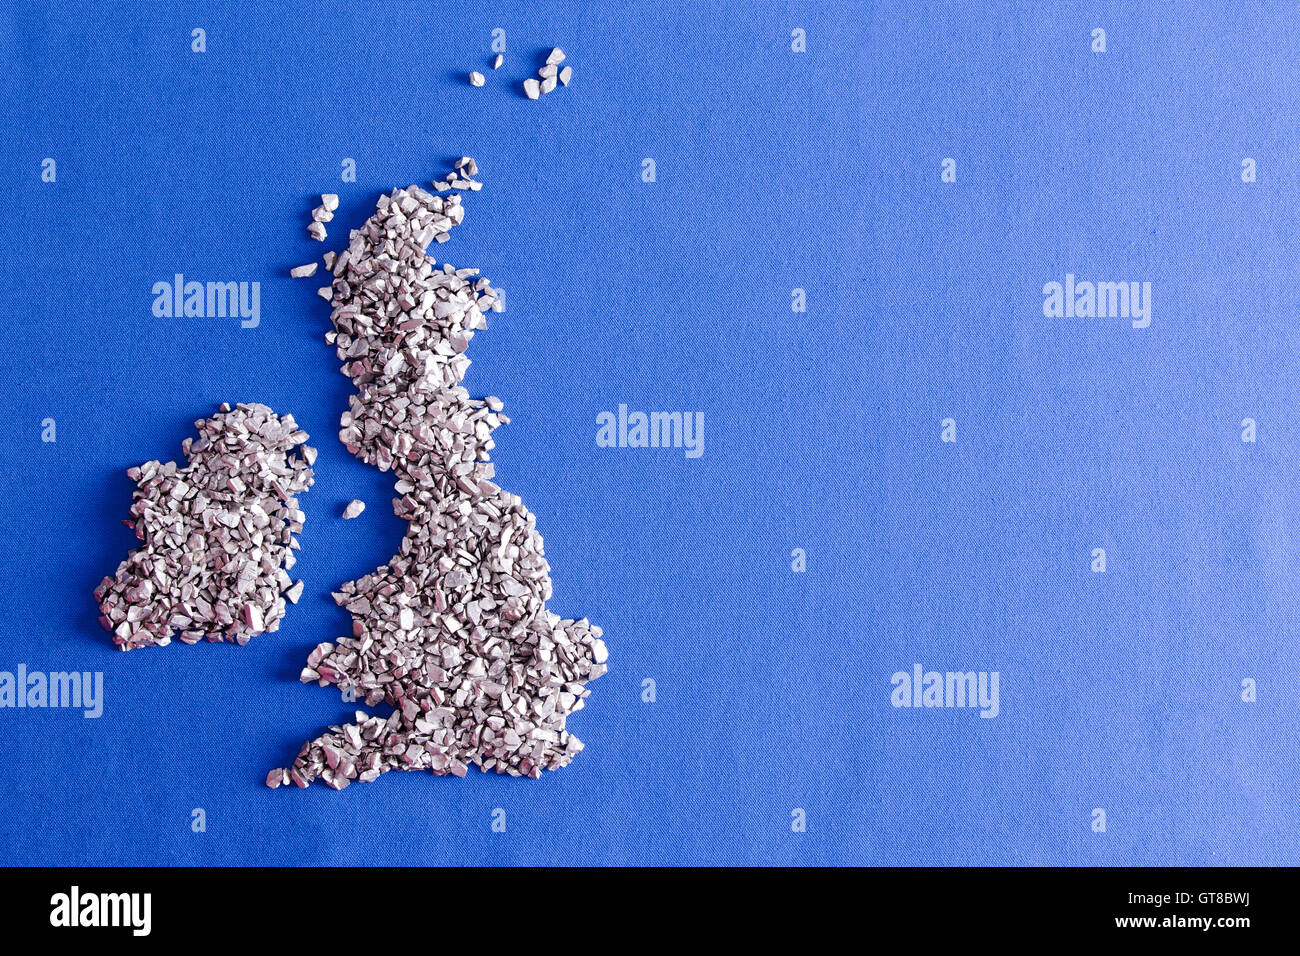 Carte conceptuelle du Royaume-Uni et République d'Irlande formée de pierres argenté décoratif sur un fond textile bleu Banque D'Images